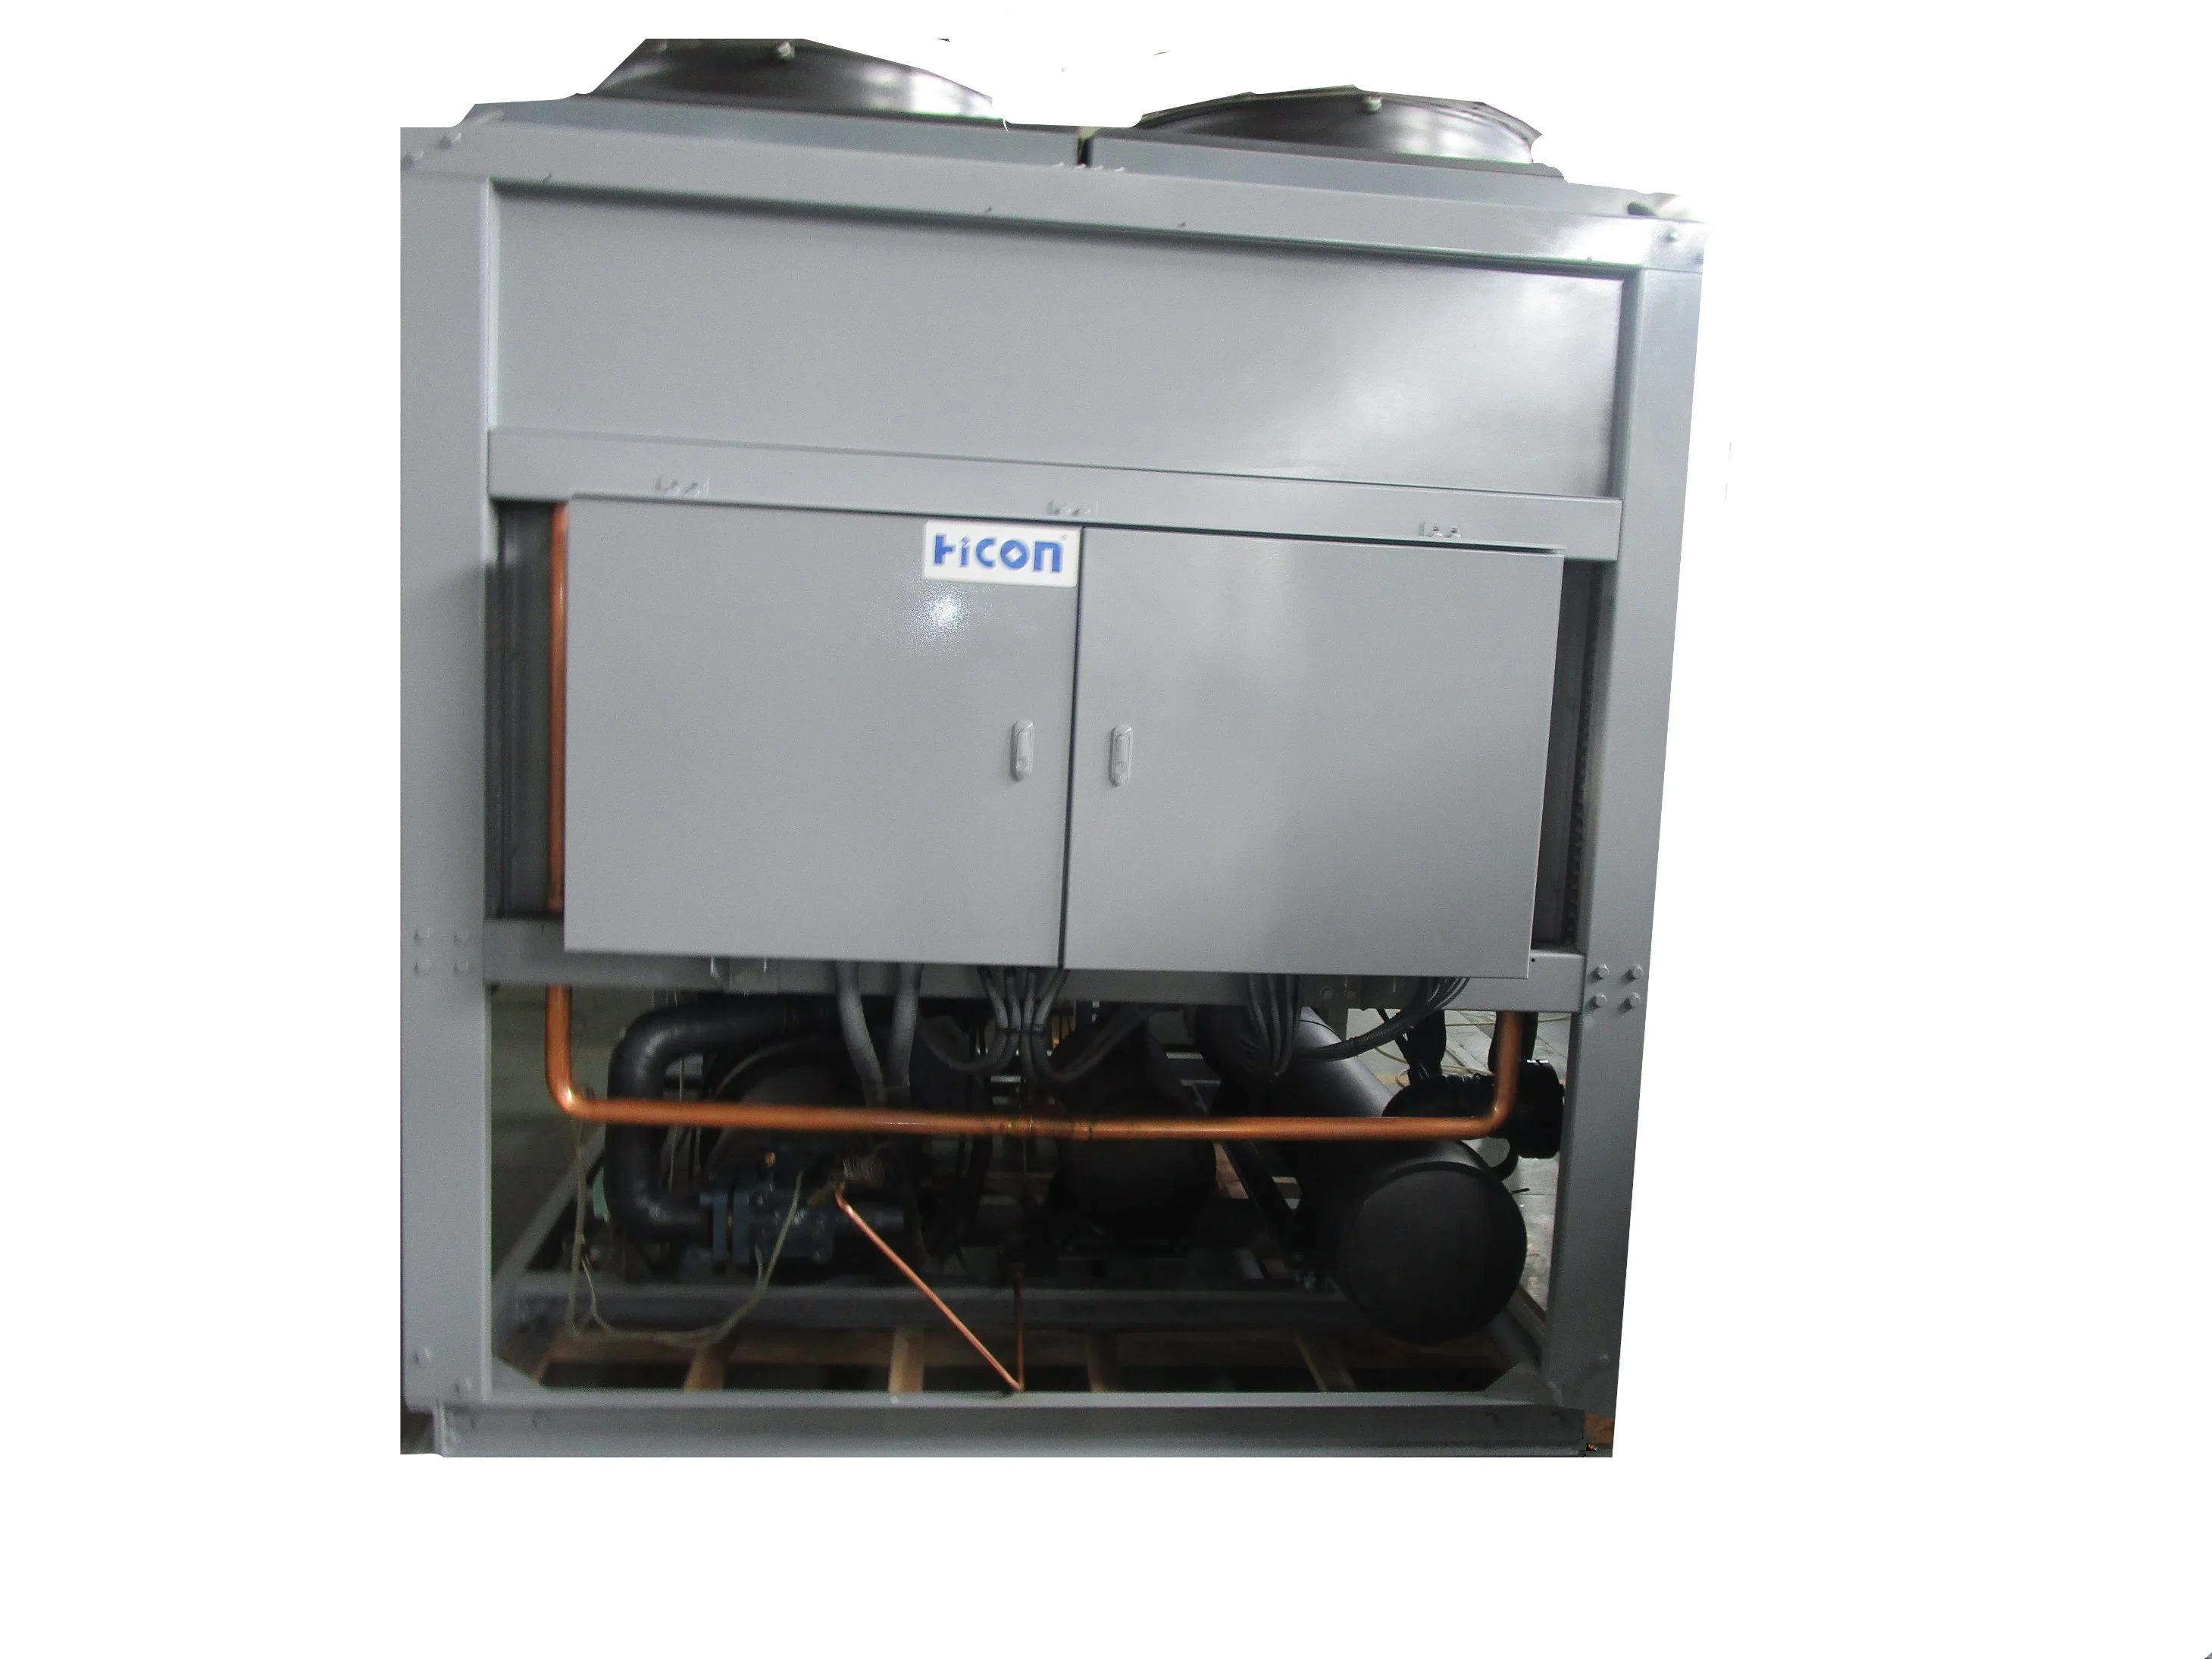 Les usines de fabrication de machines Hisurp utilisent un climatiseur refroidi par eau